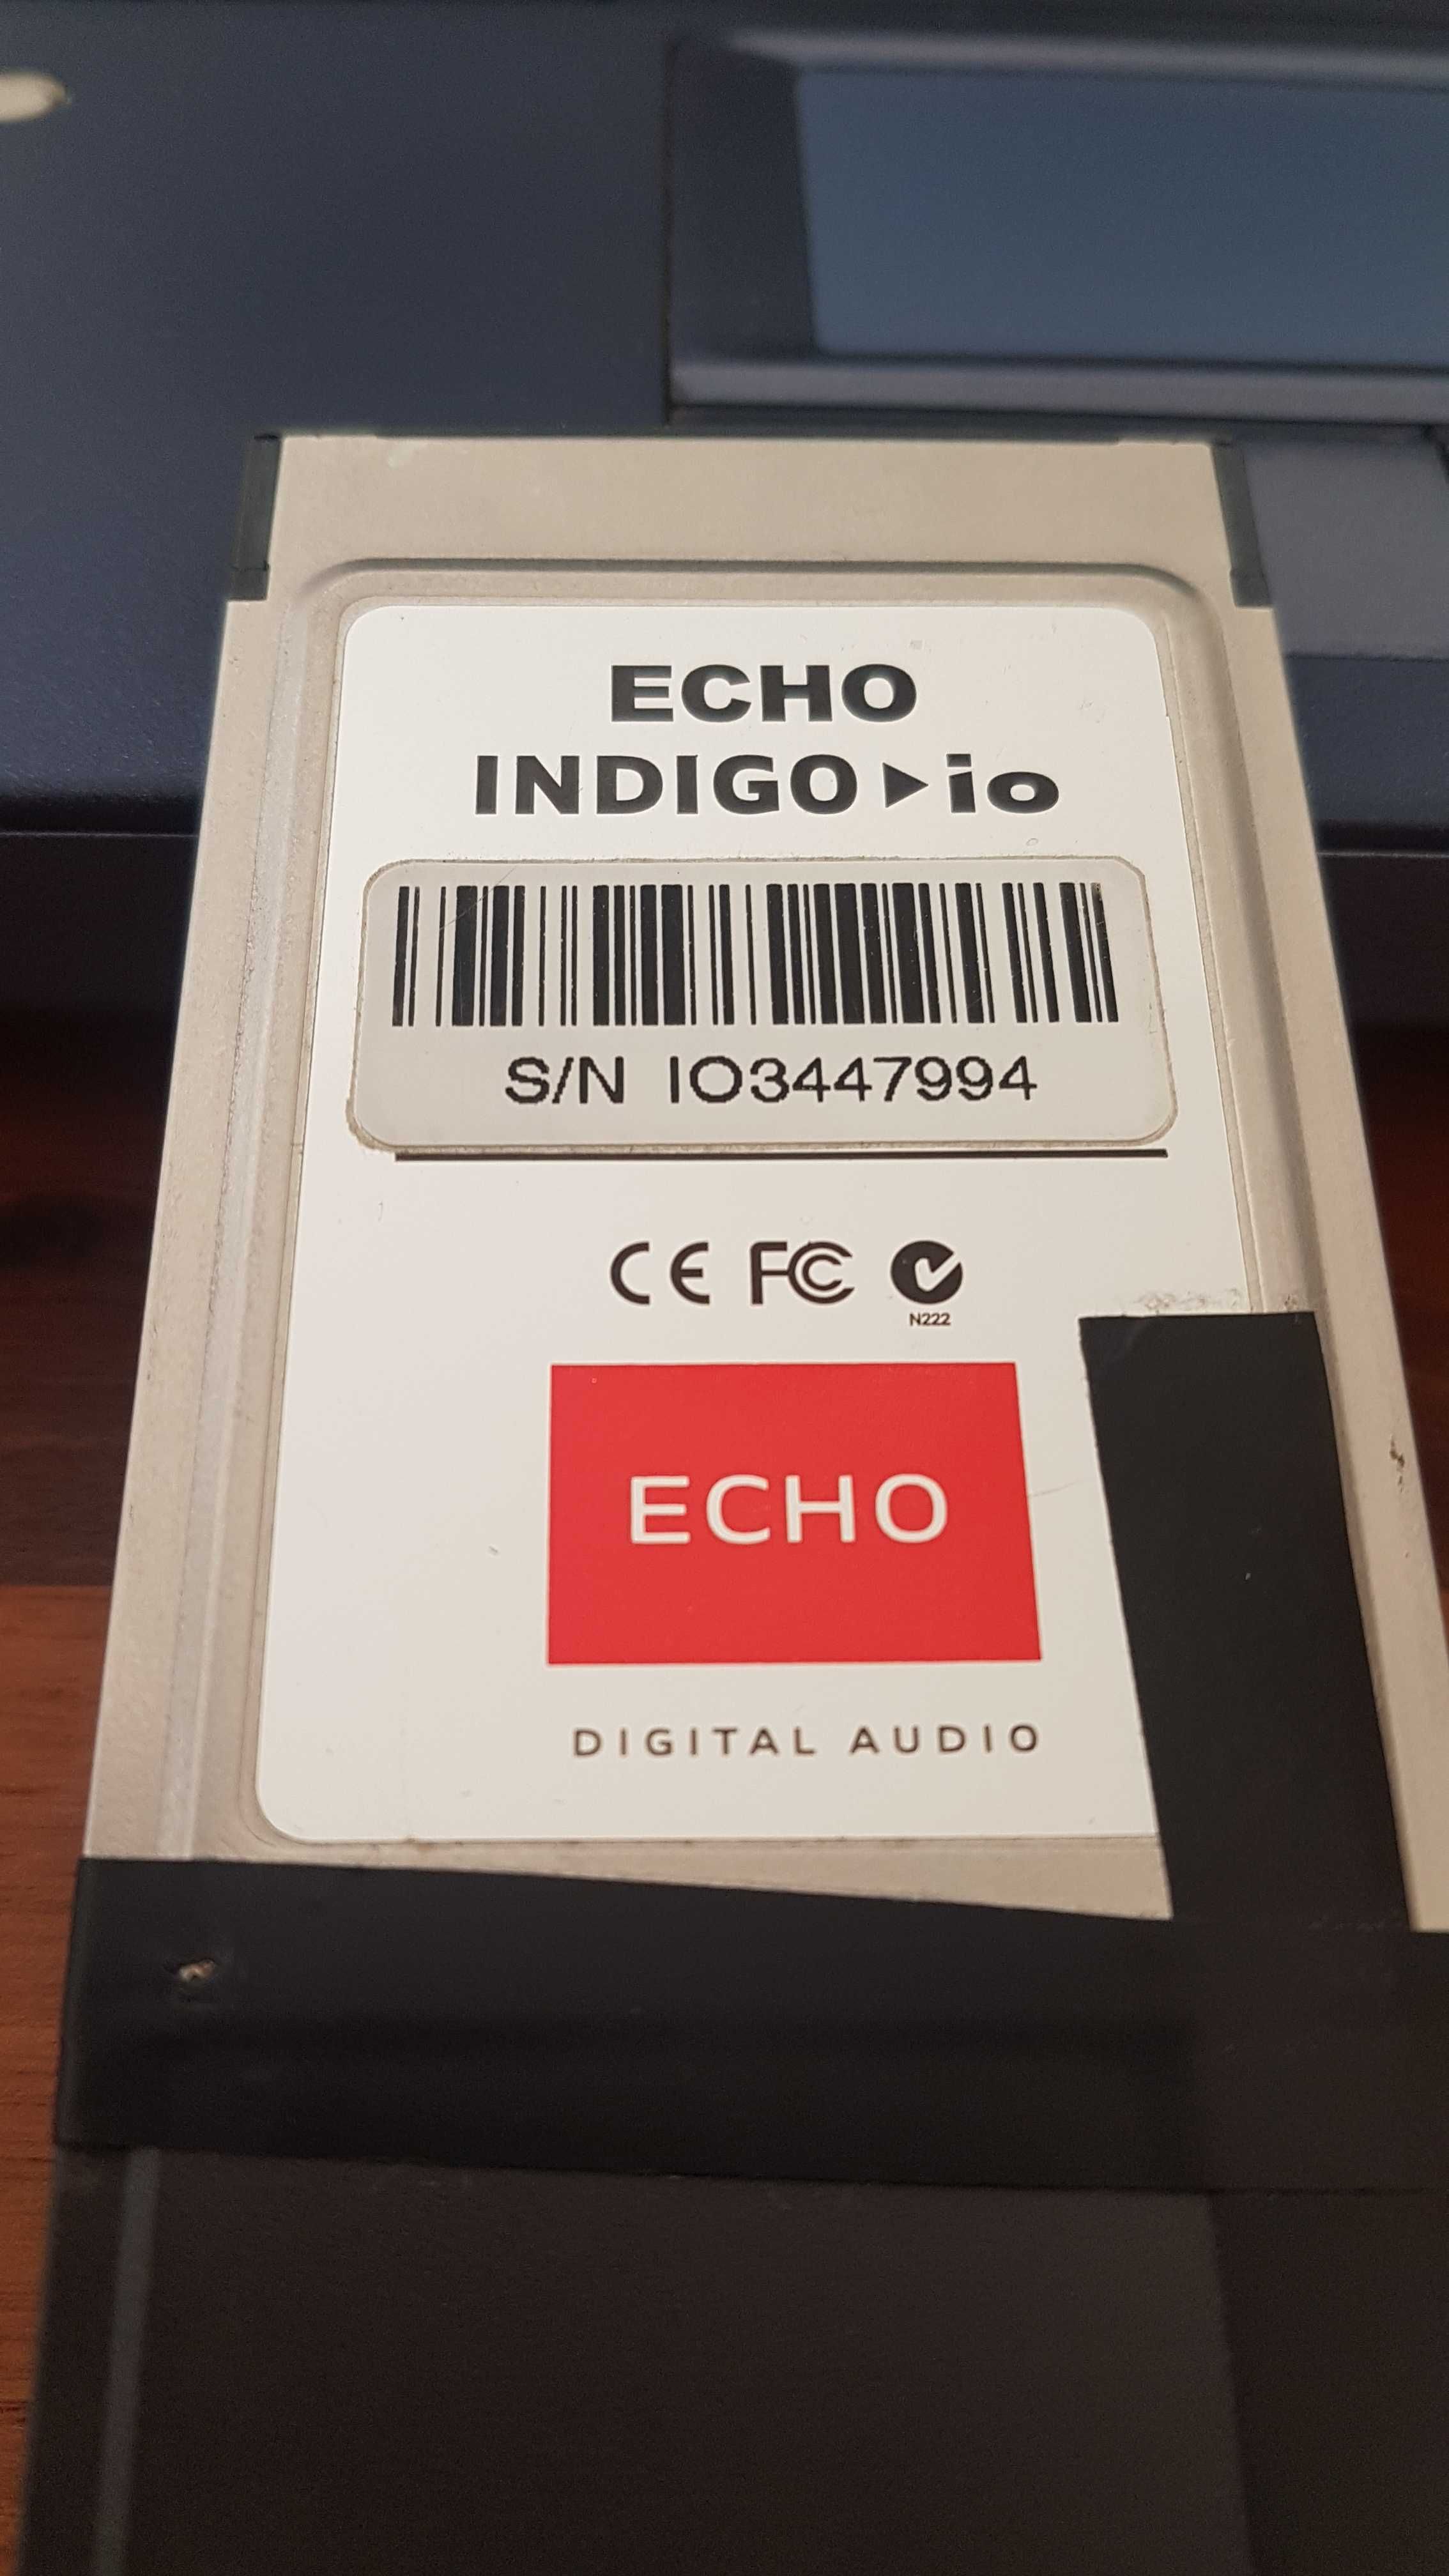 Sony Vaio com PCMCIA Echo Indigo - gravacao de audio 24bit/96Khz